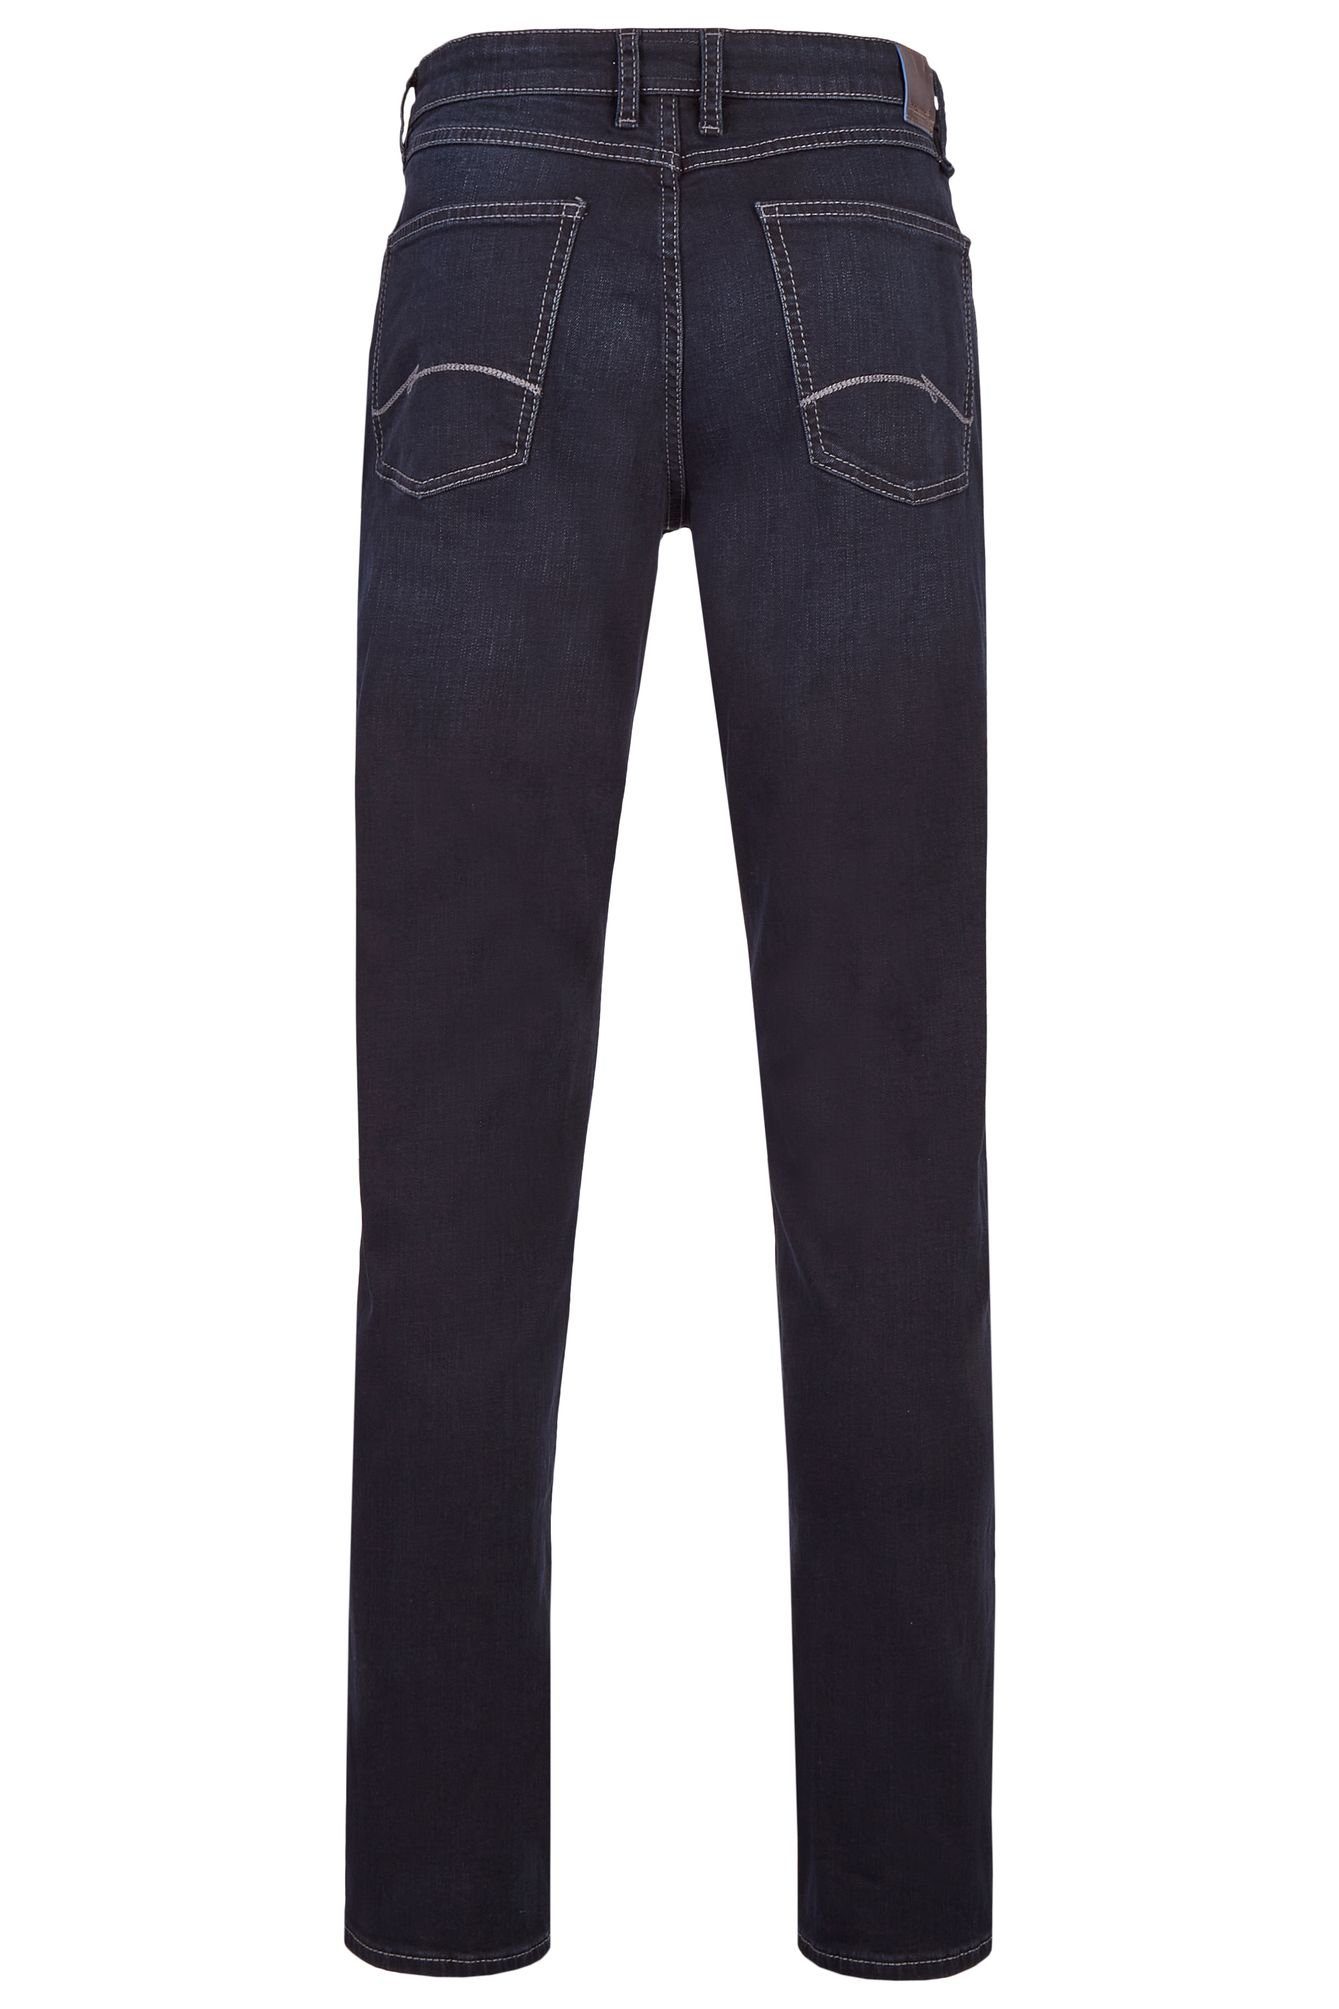 688465-9285 black (89) 5-Pocket-Jeans blue Hattric